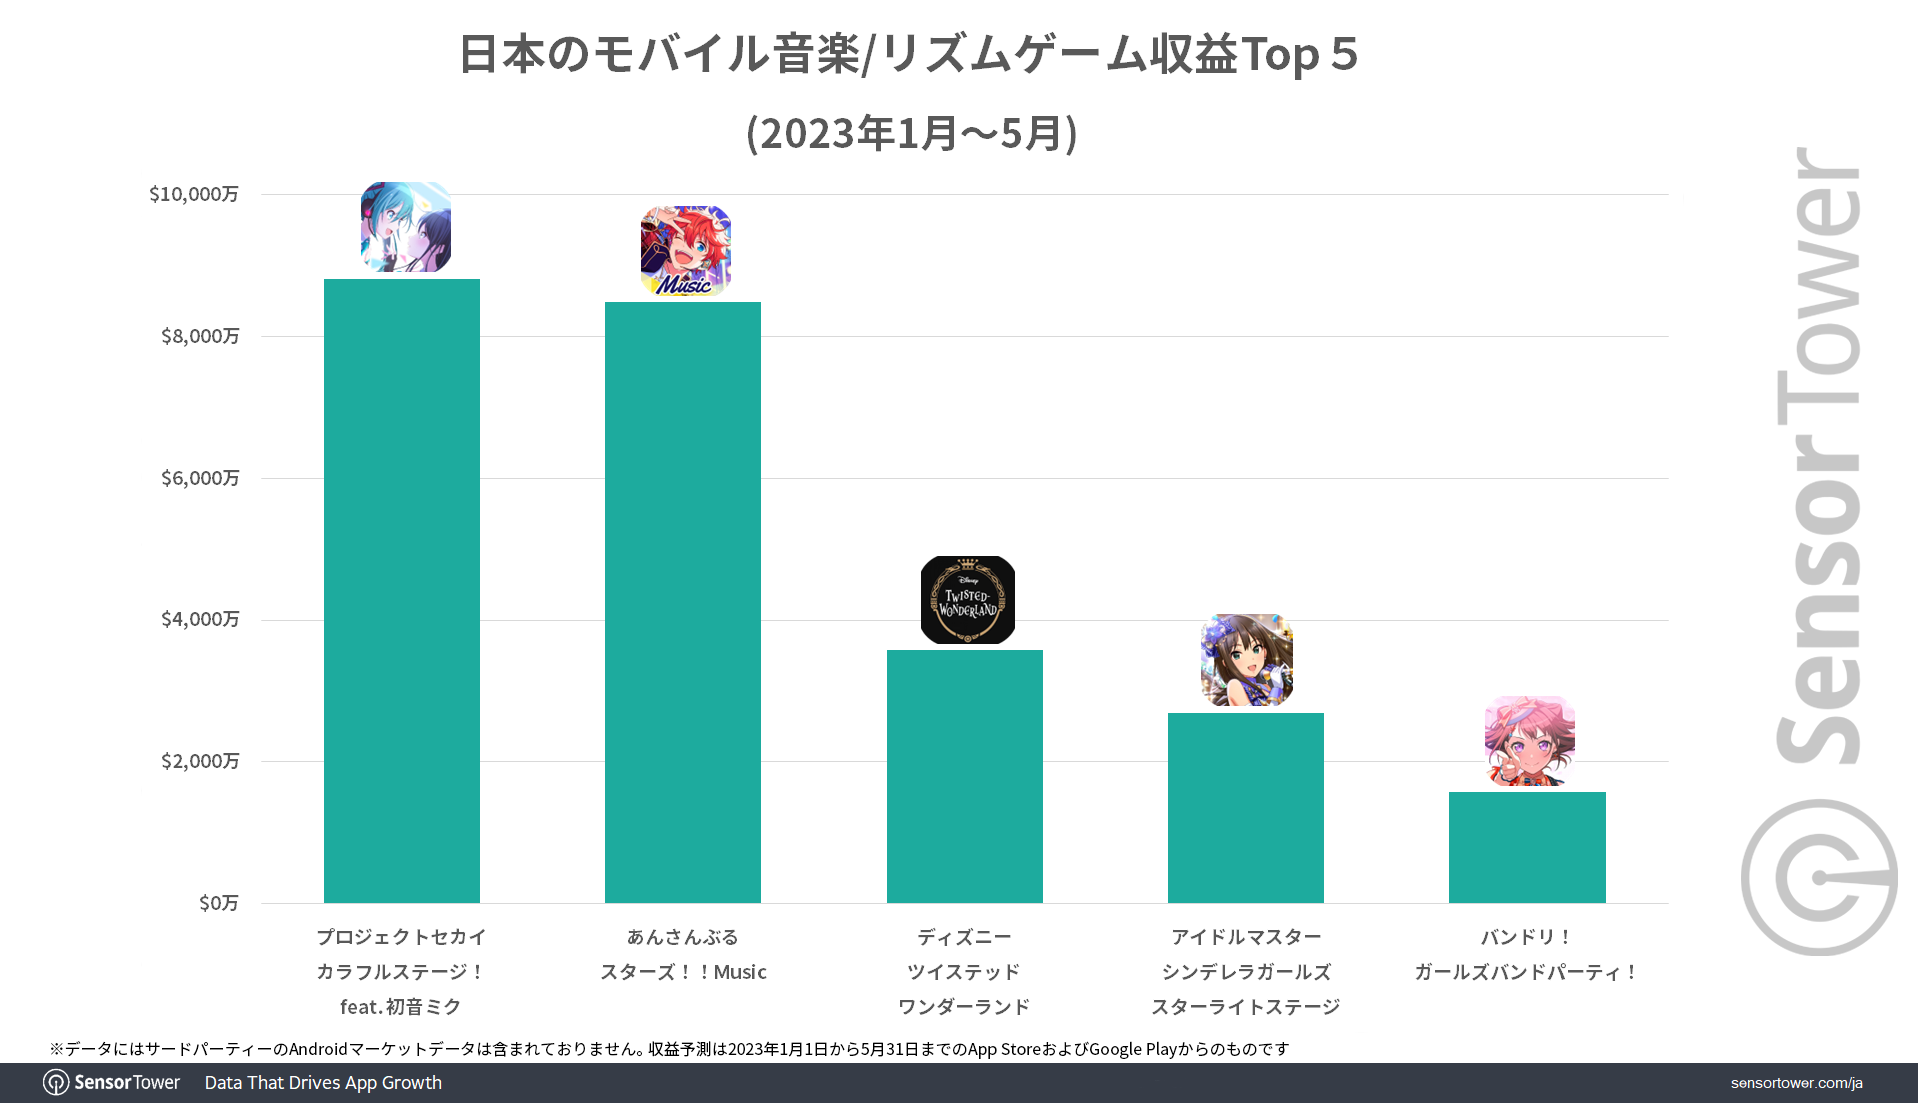 Revenue-Top-5-Japan